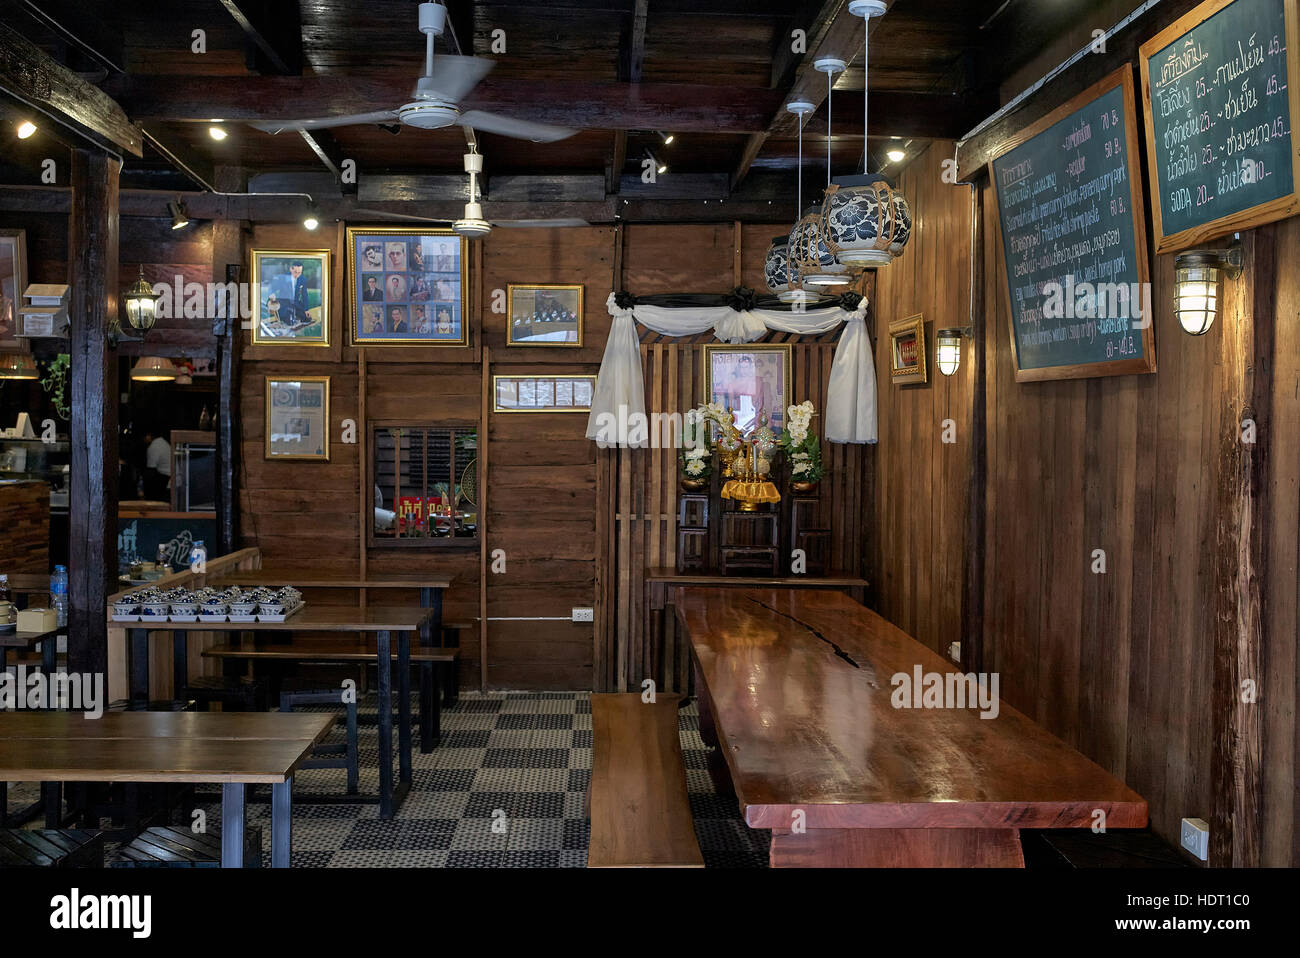 Thailandia ristorante. Vista interna di un tradizionale ristorante Thailandese in stile vintage rivestito in legno con posti a sedere e tavoli in legno. S. E. Asia Foto Stock